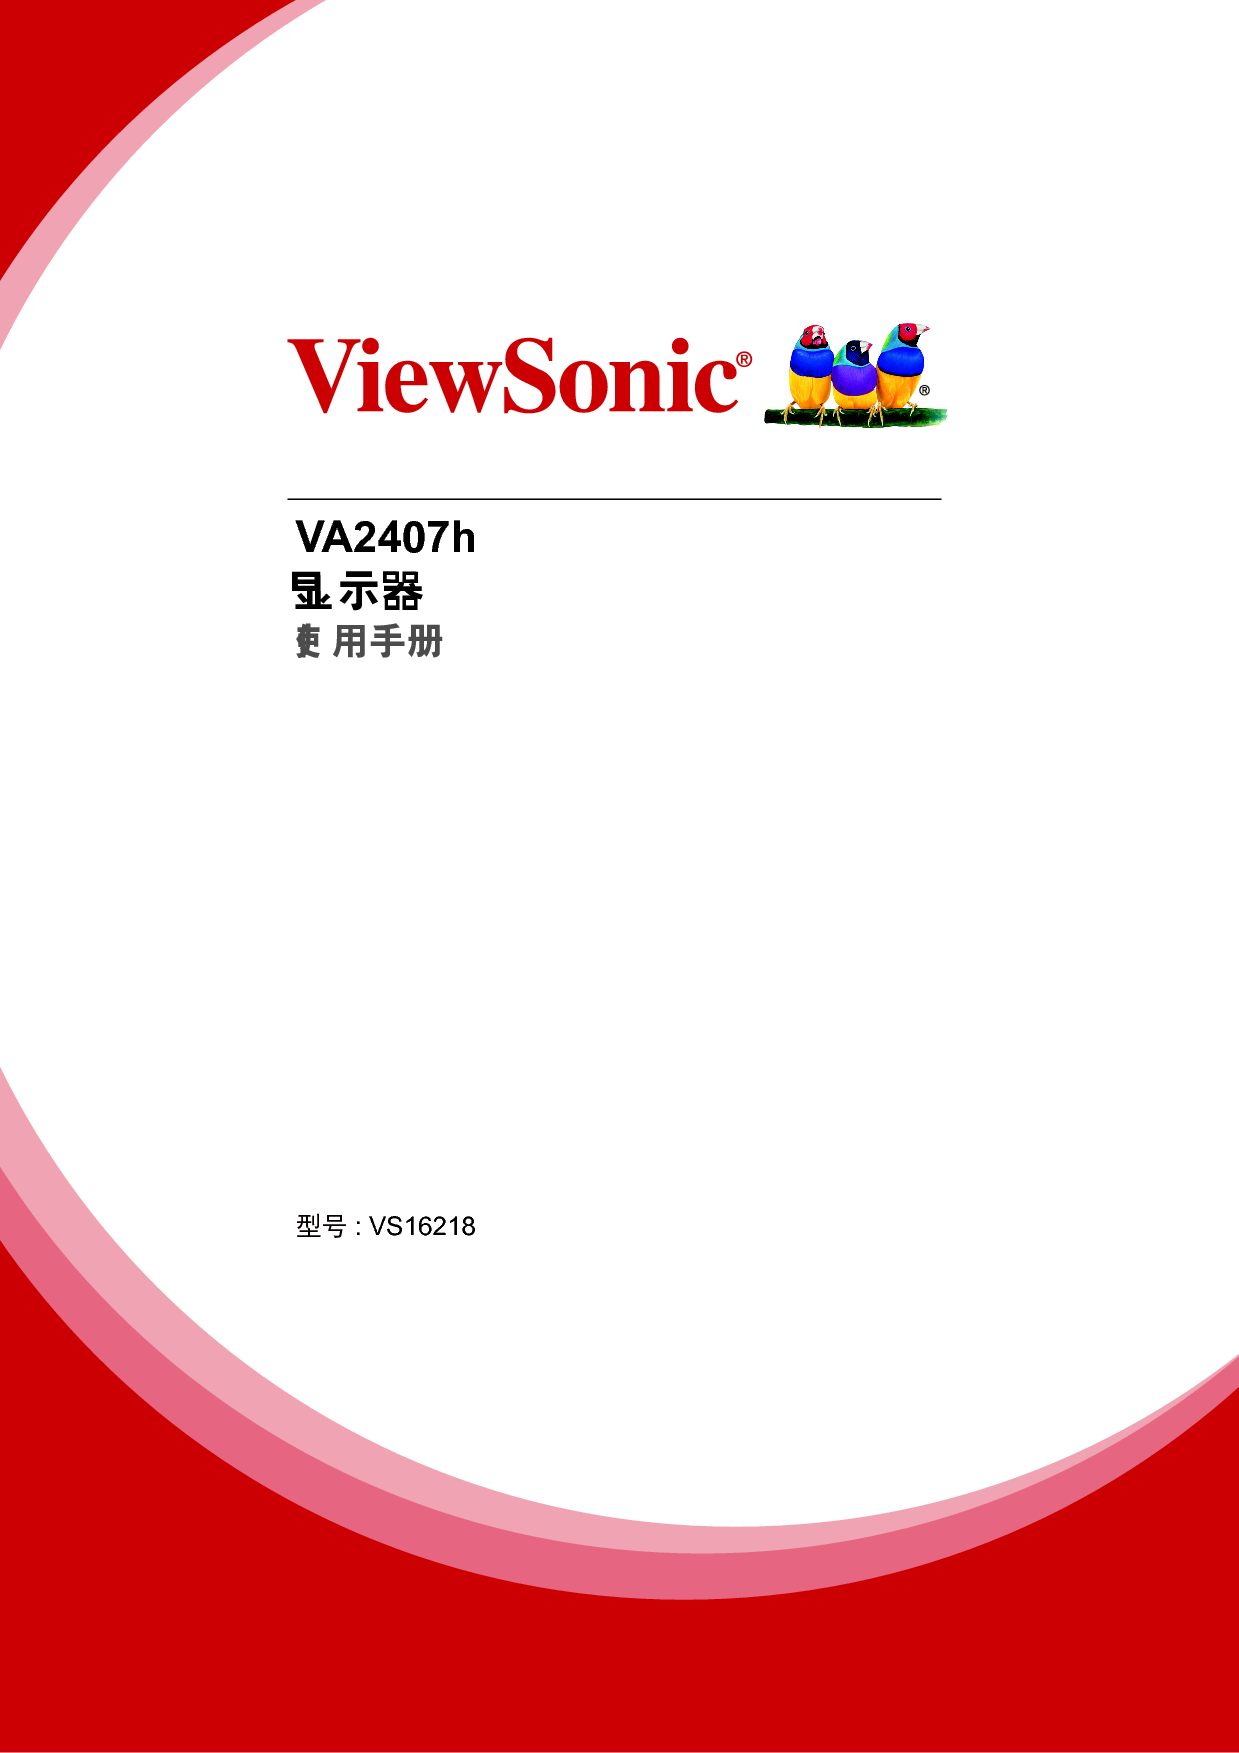 优派 ViewSonic VA2407h 使用手册 封面